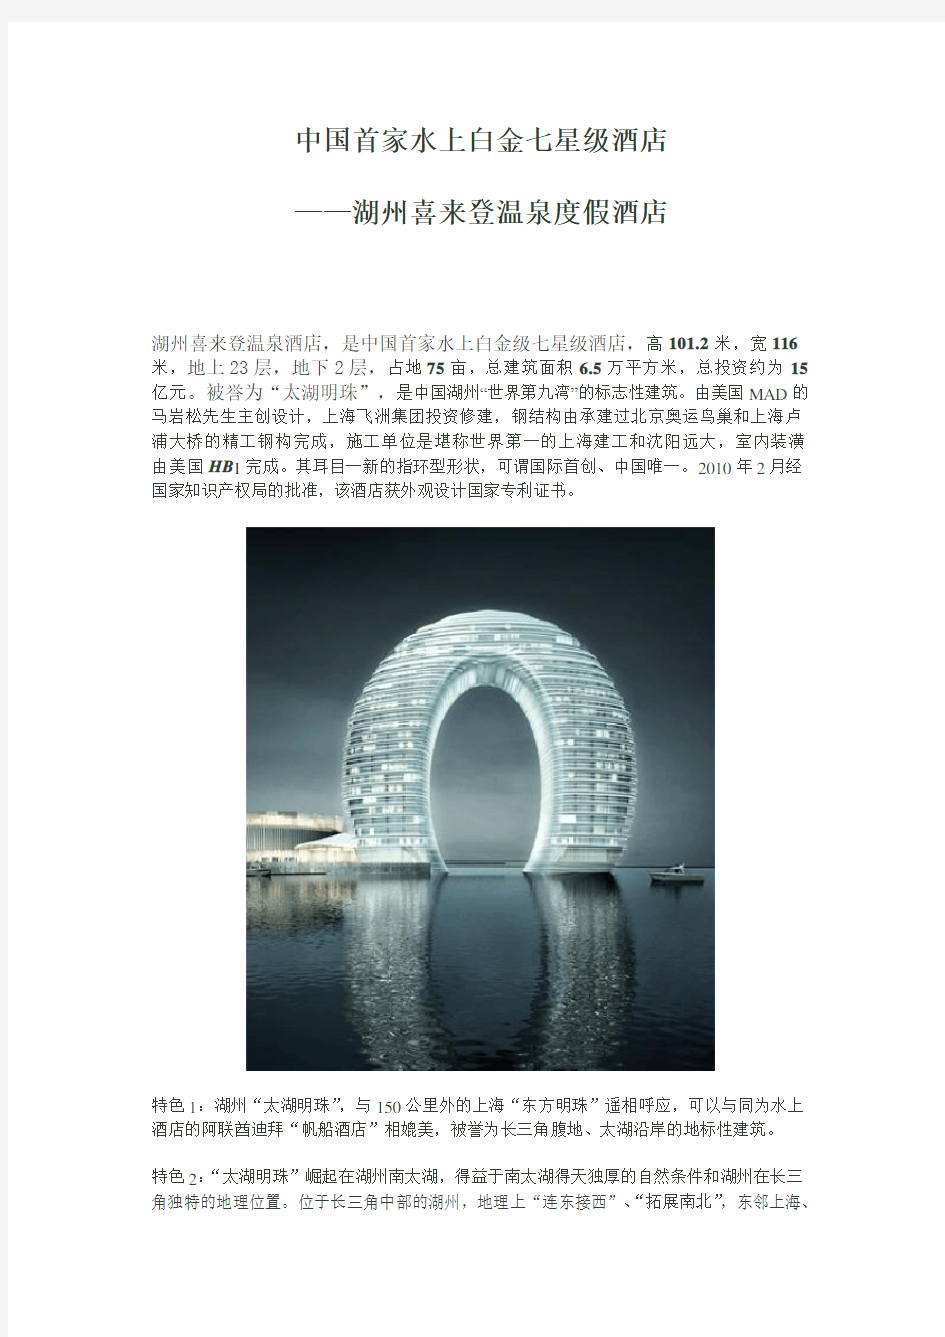 中国首家水上白金七星级酒店 湖州喜来登温泉度假酒店